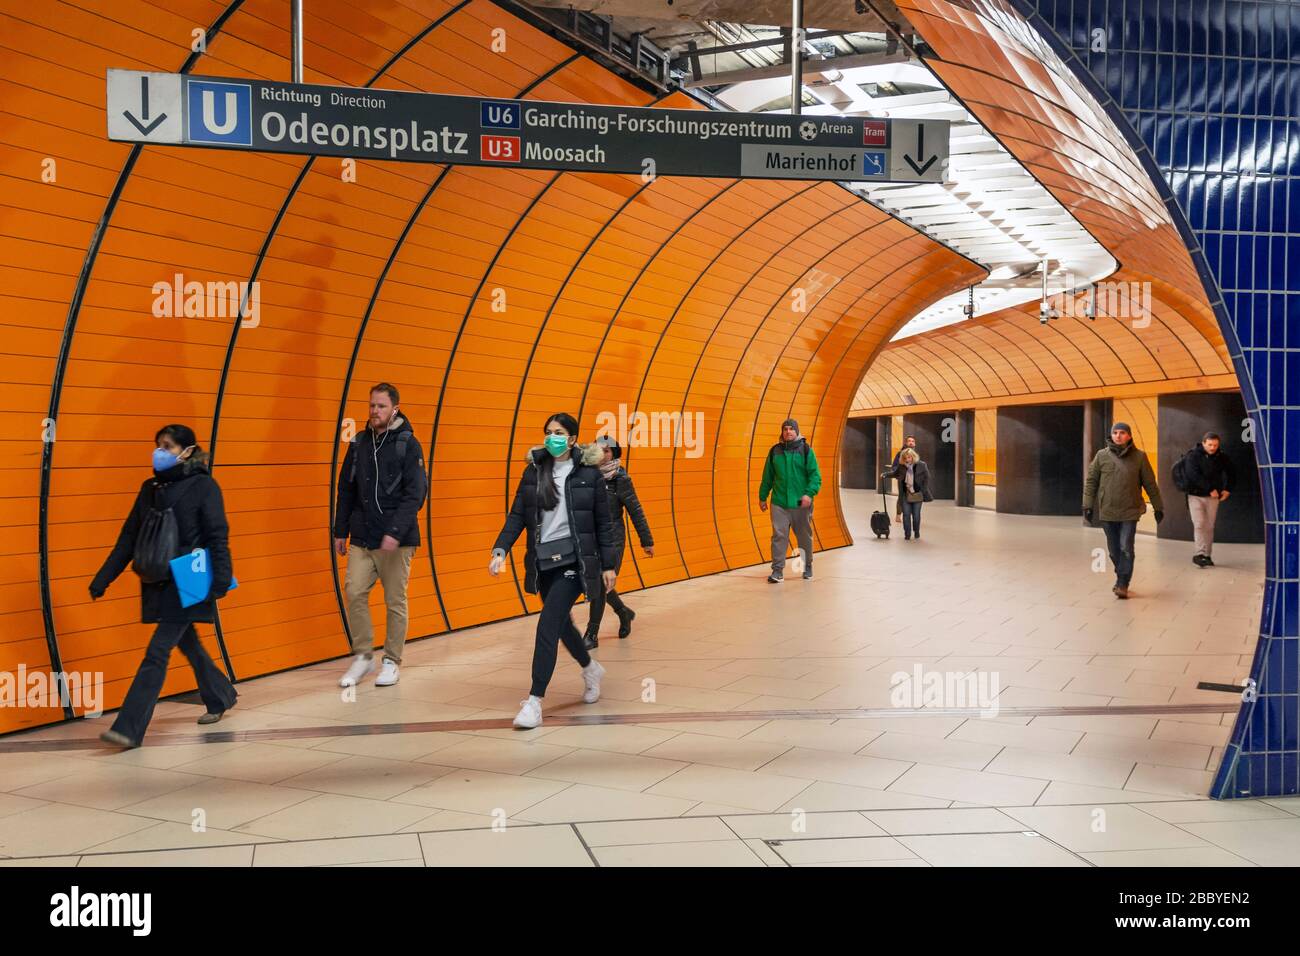 München - Bayern - Deutschland, 31. März 2020: Menschen mit Mundschutz wegen Corona-Virus am Marienplatz, München in Deutschland Stockfoto